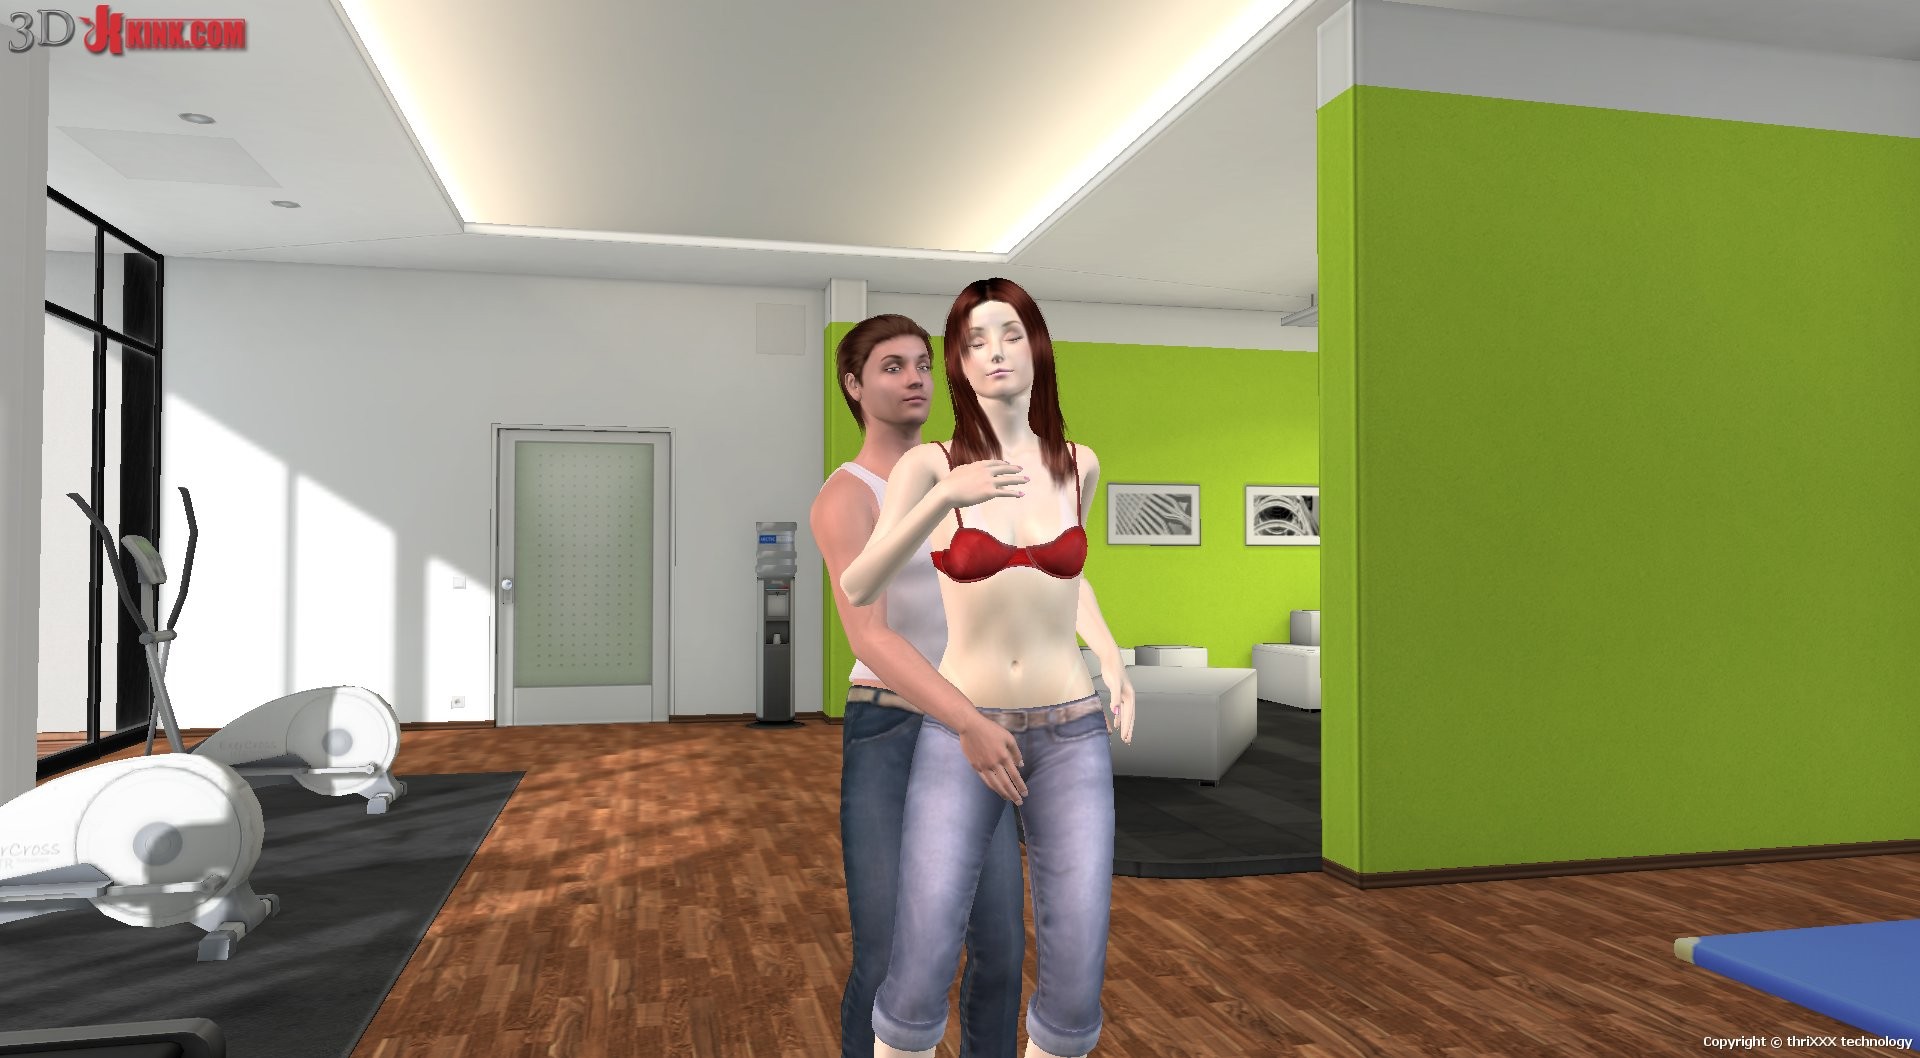 Azione di sesso bdsm caldo creato in virtuale gioco di sesso fetish 3d!
 #69357131